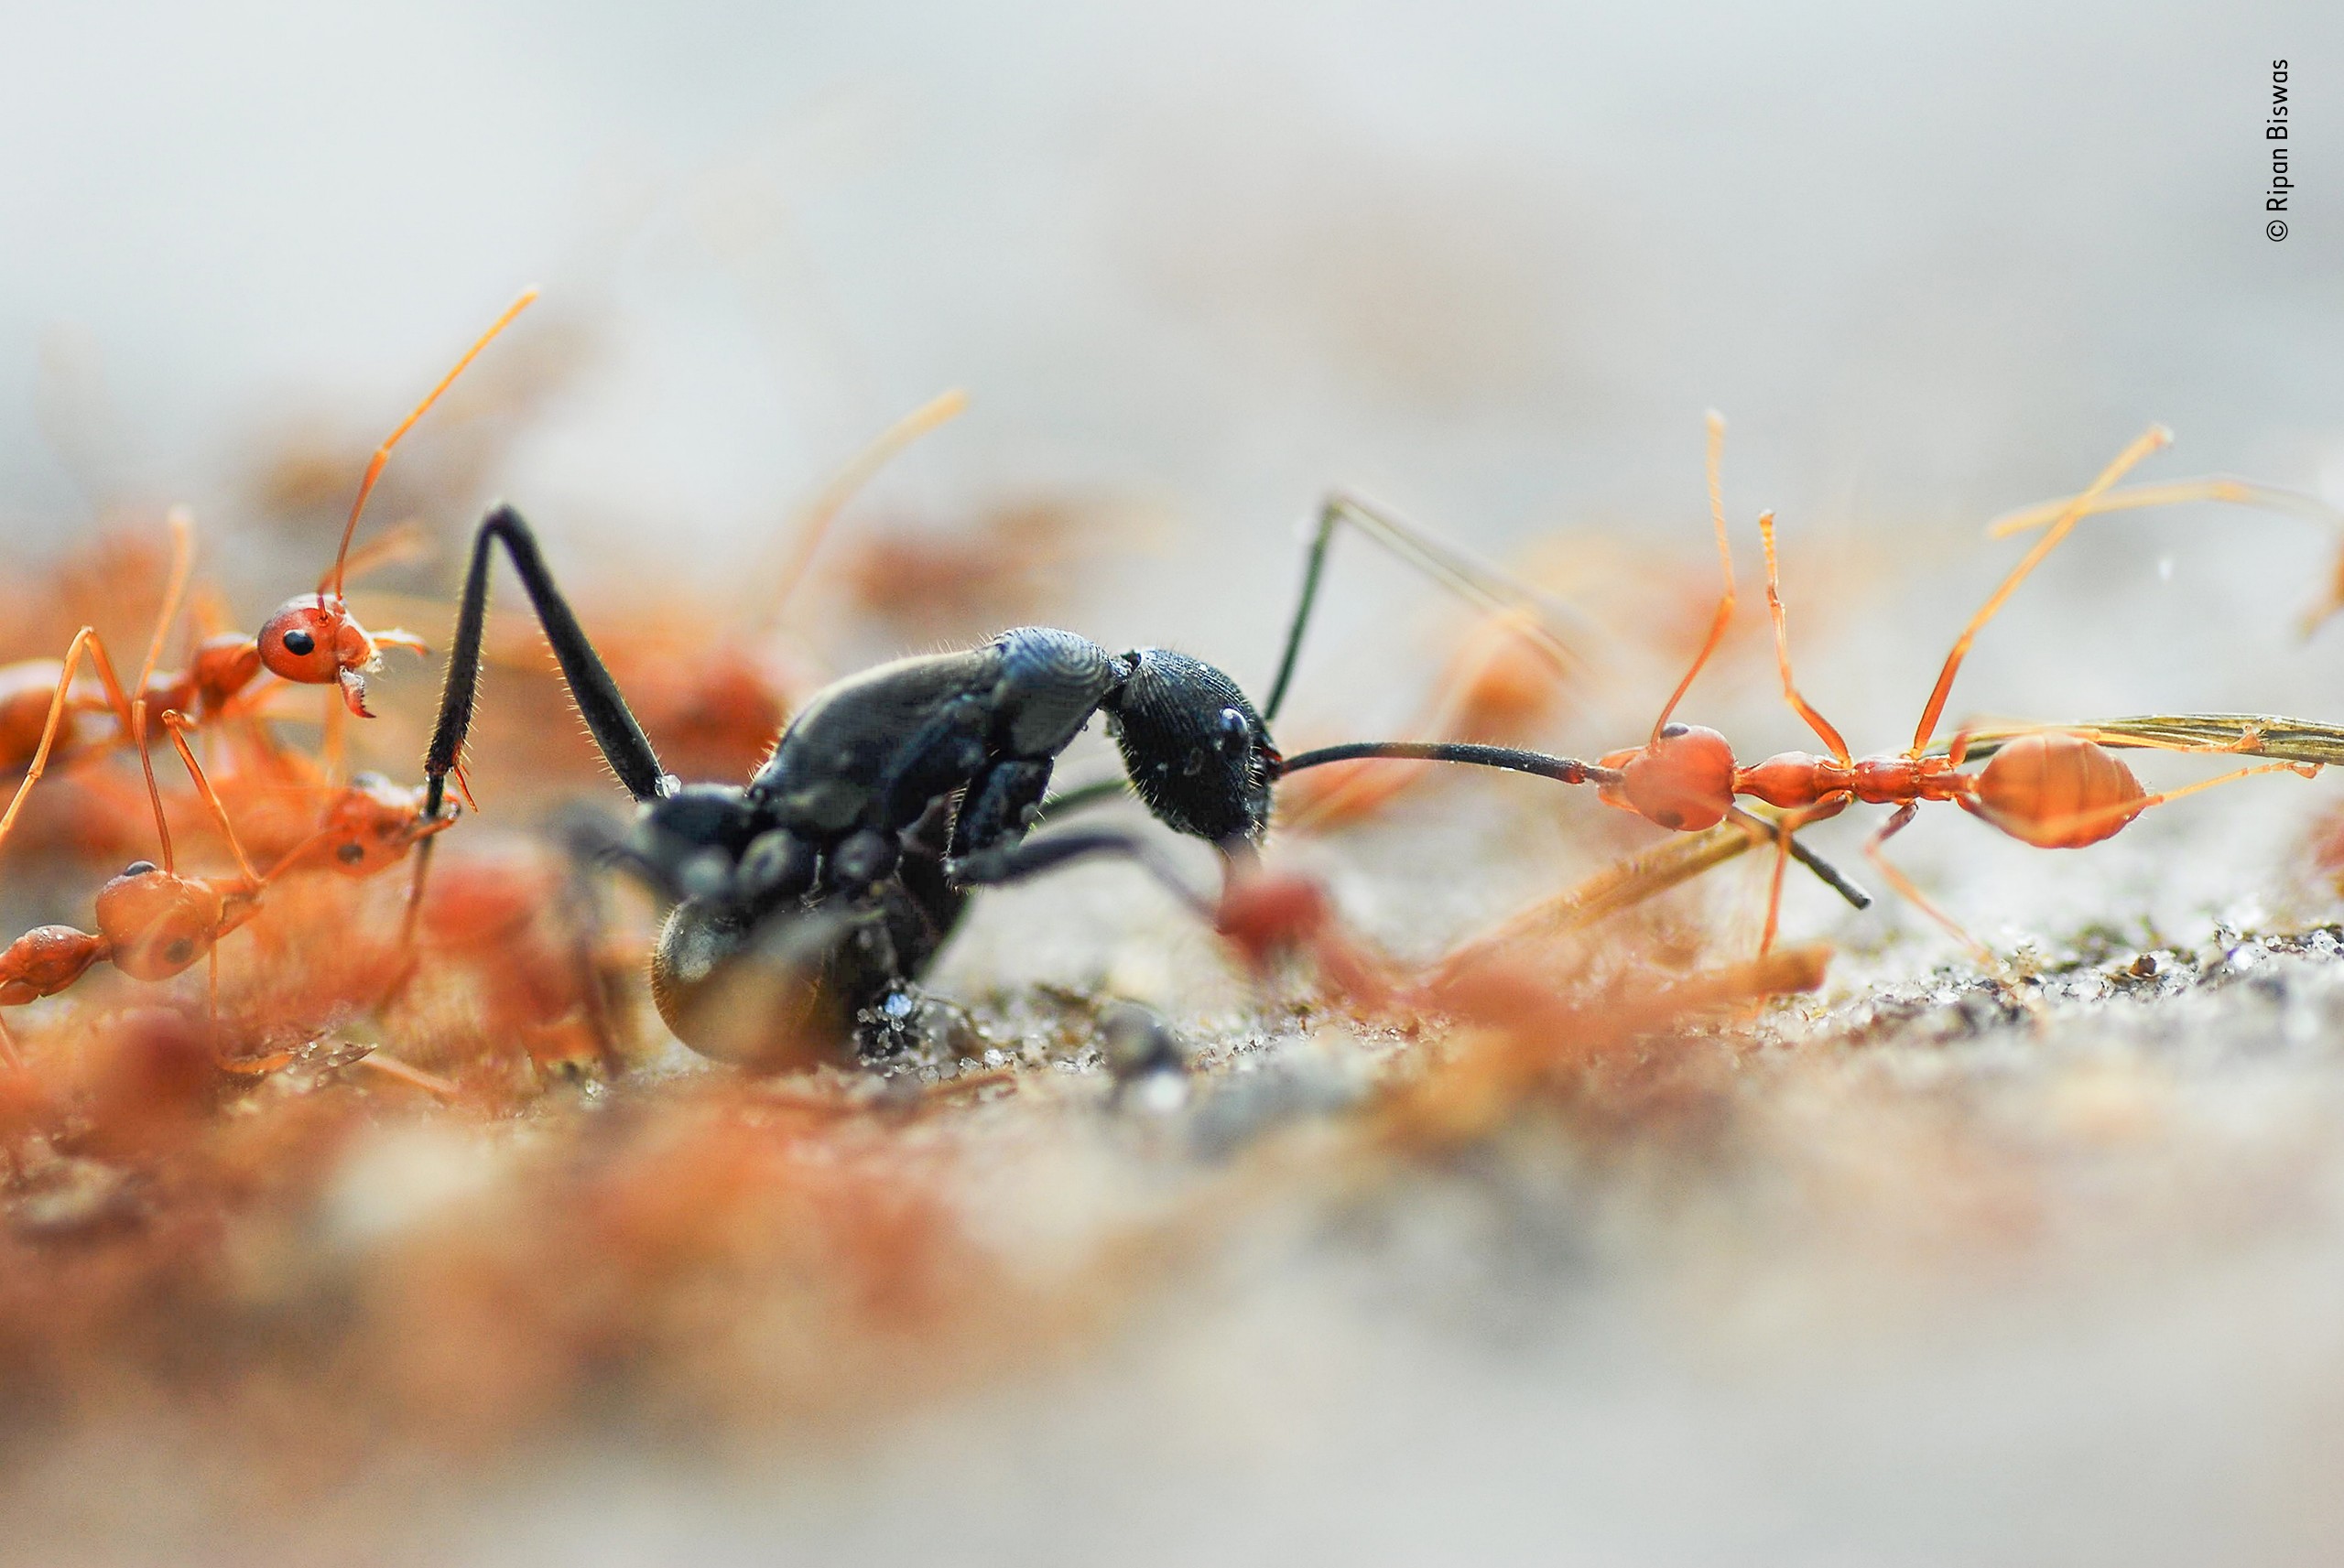 Победитель в категории «Портфолио фотографа дикой природы», 2020. «Битва муравьёв». Автор Рипан Бисвас